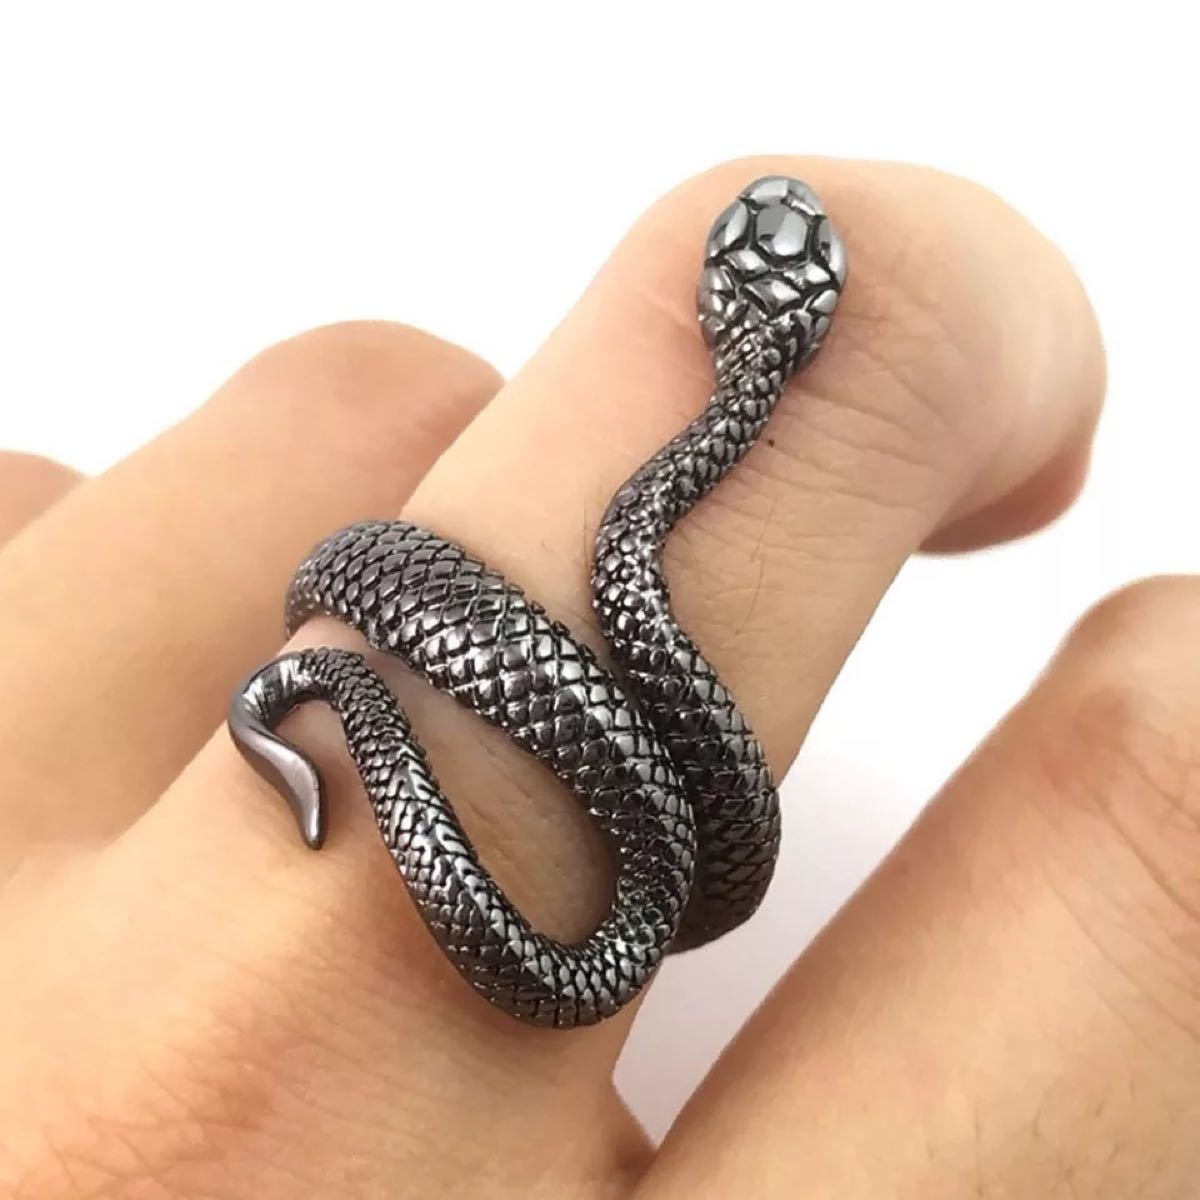 爬虫類 蛇 リング パンクファッション ブラック ヘビ 新品未使用 匿名配送送料無料 ユニセックス